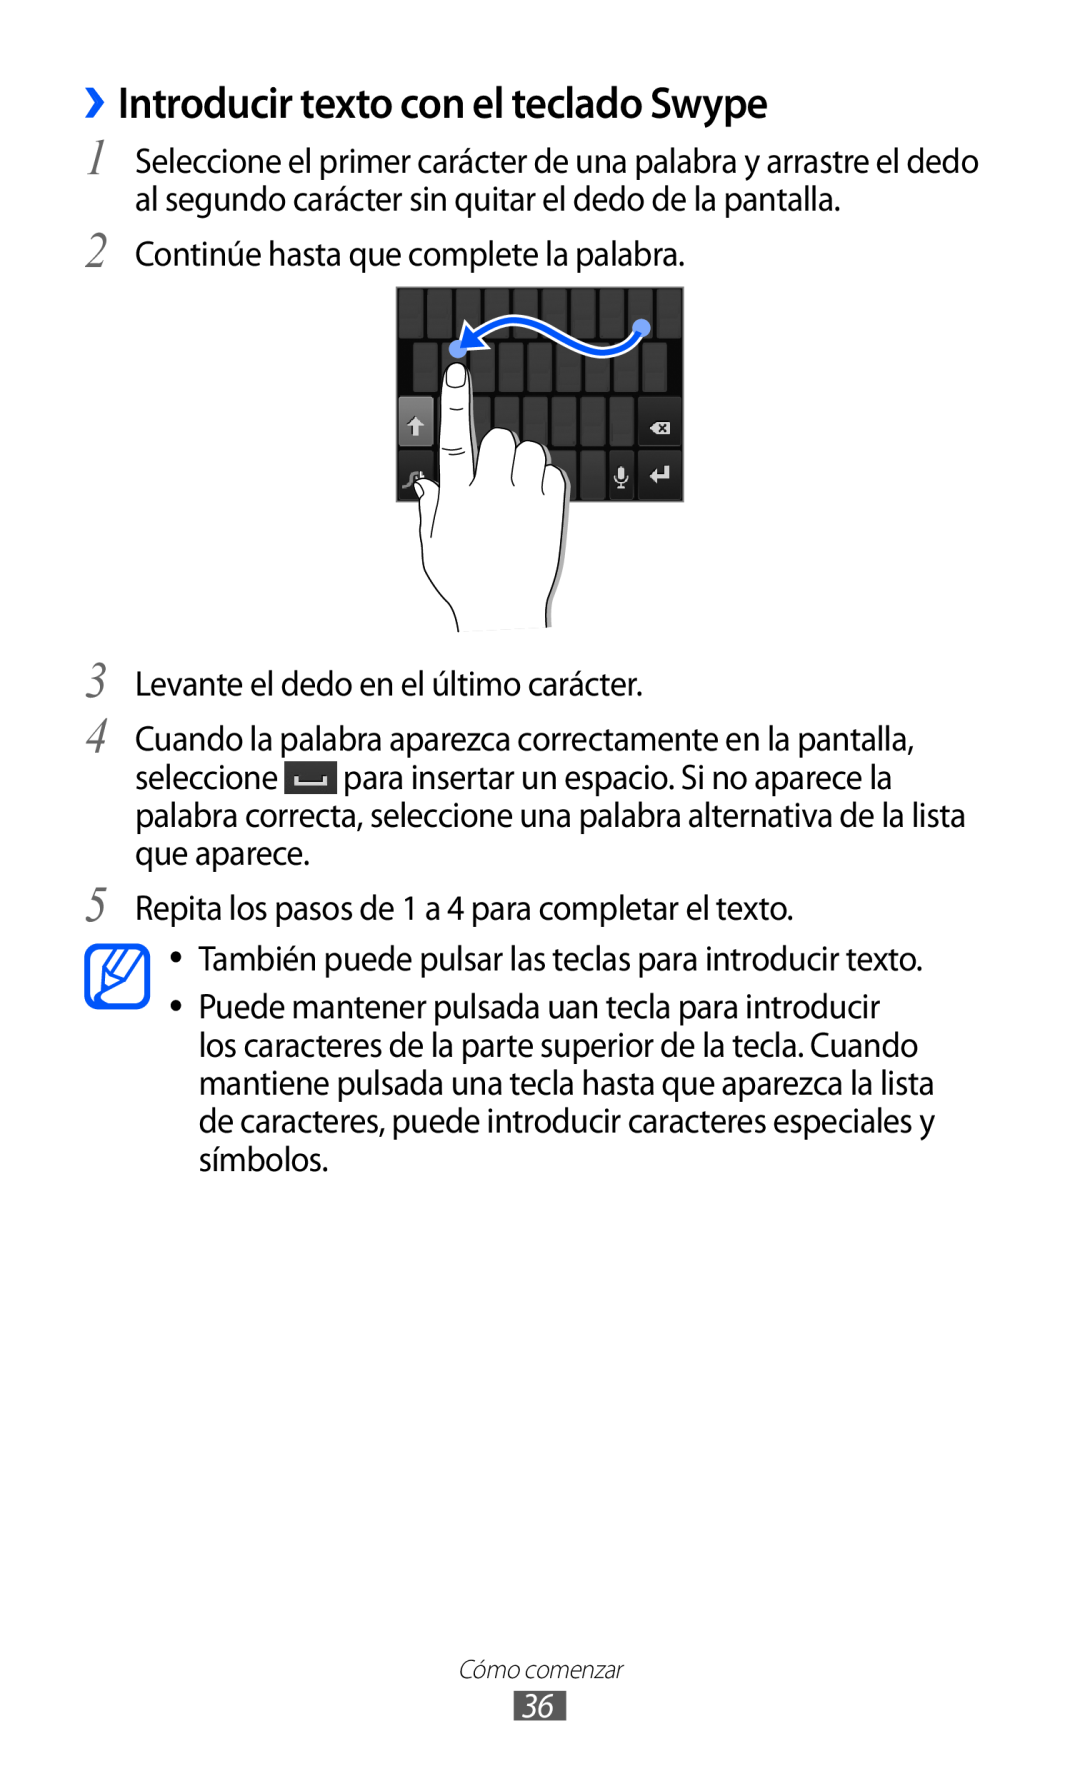 Samsung GT-S6500ZYAAMN, GT-S6500RWDTMN, GT-S6500RWAITV, GT-S6500XKADBT manual ››Introducir texto con el teclado Swype 